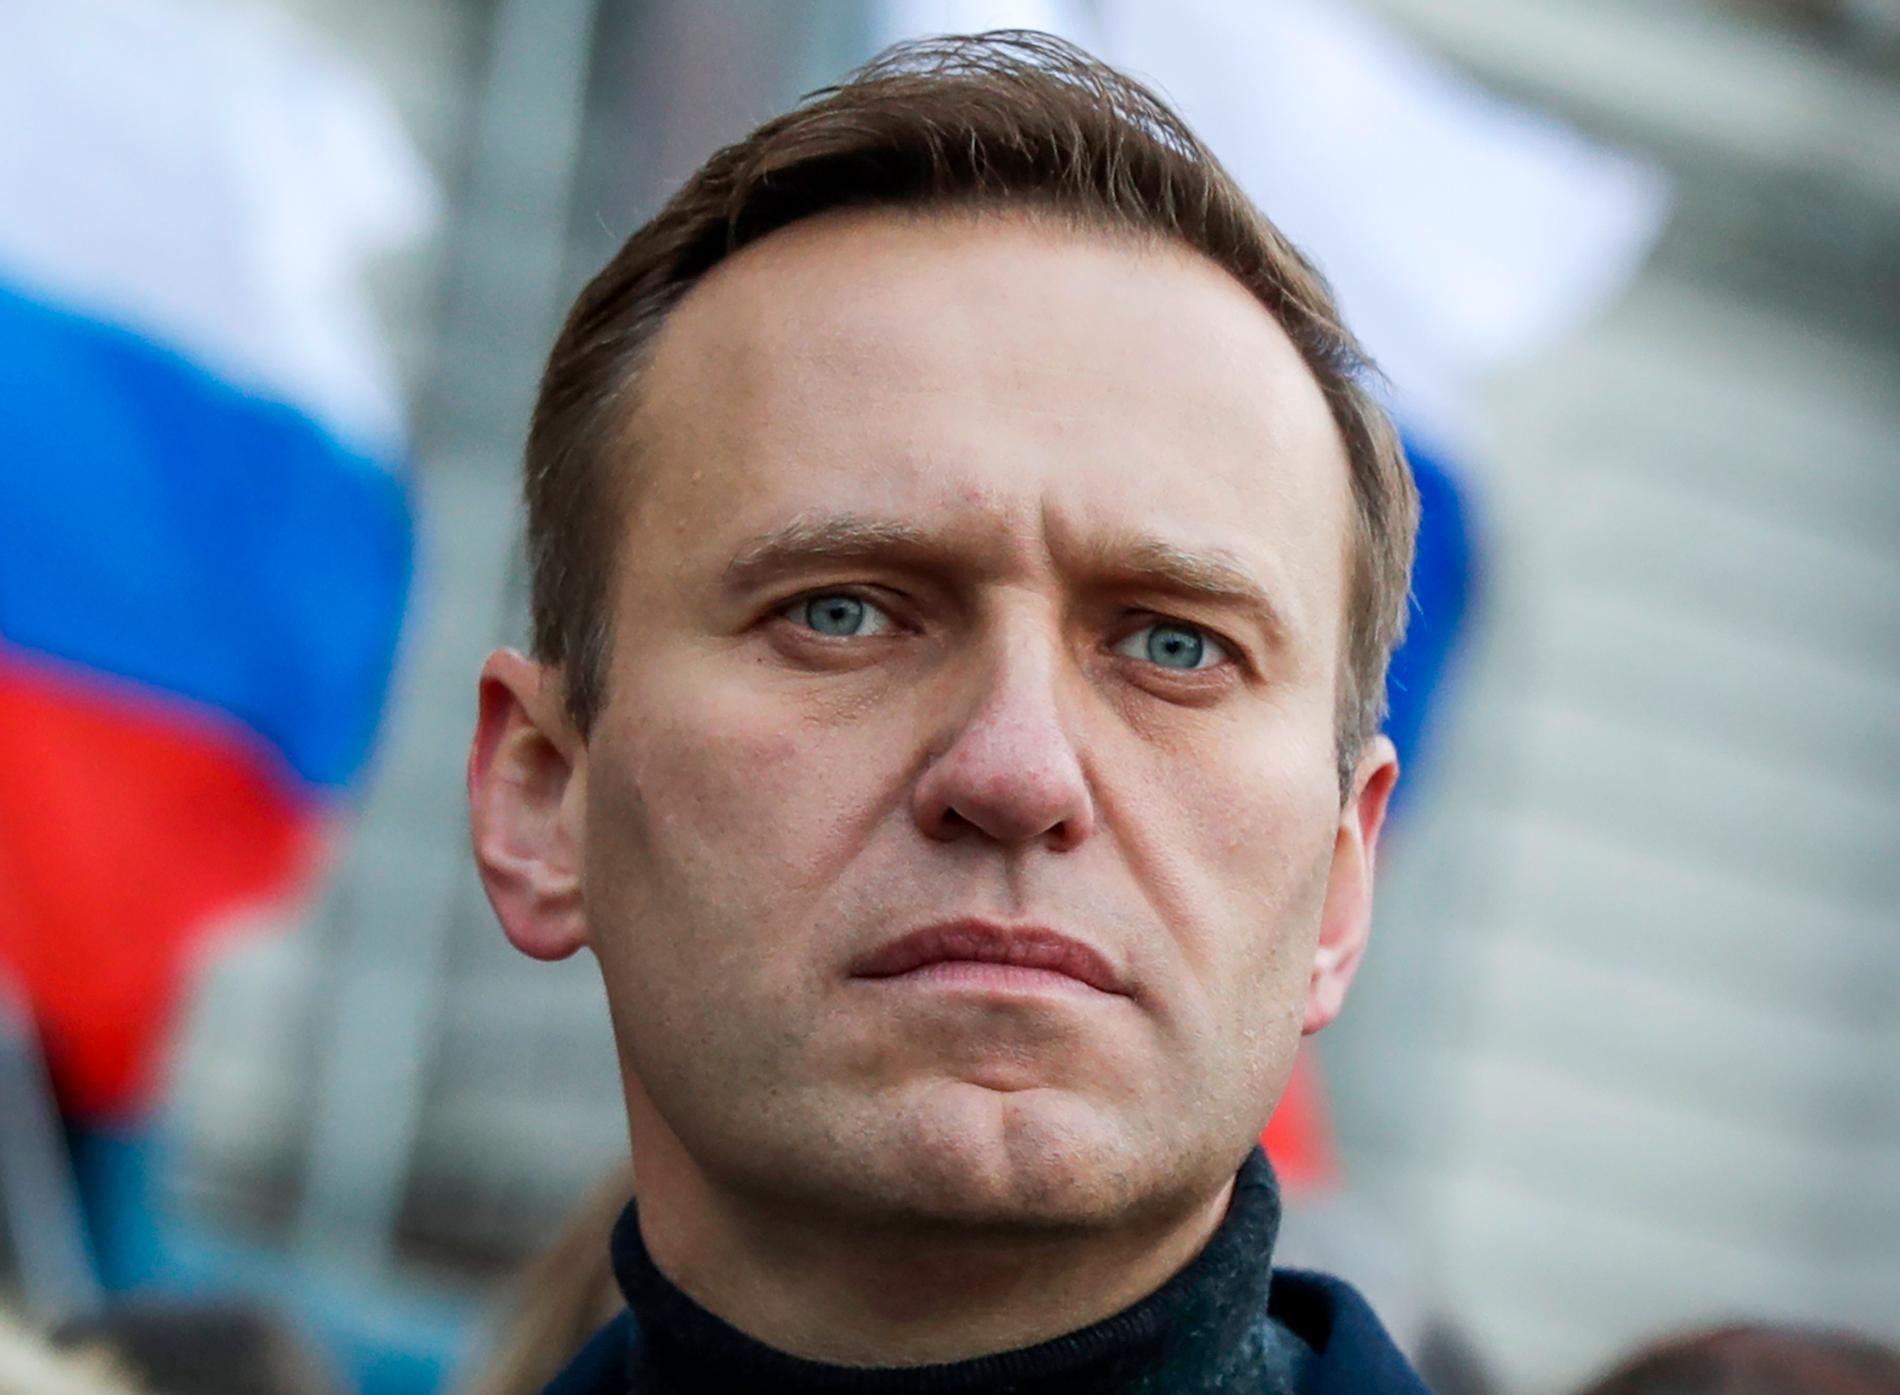 Ryske regimkritikern Aleksej Navalnyj. Arkivbild.